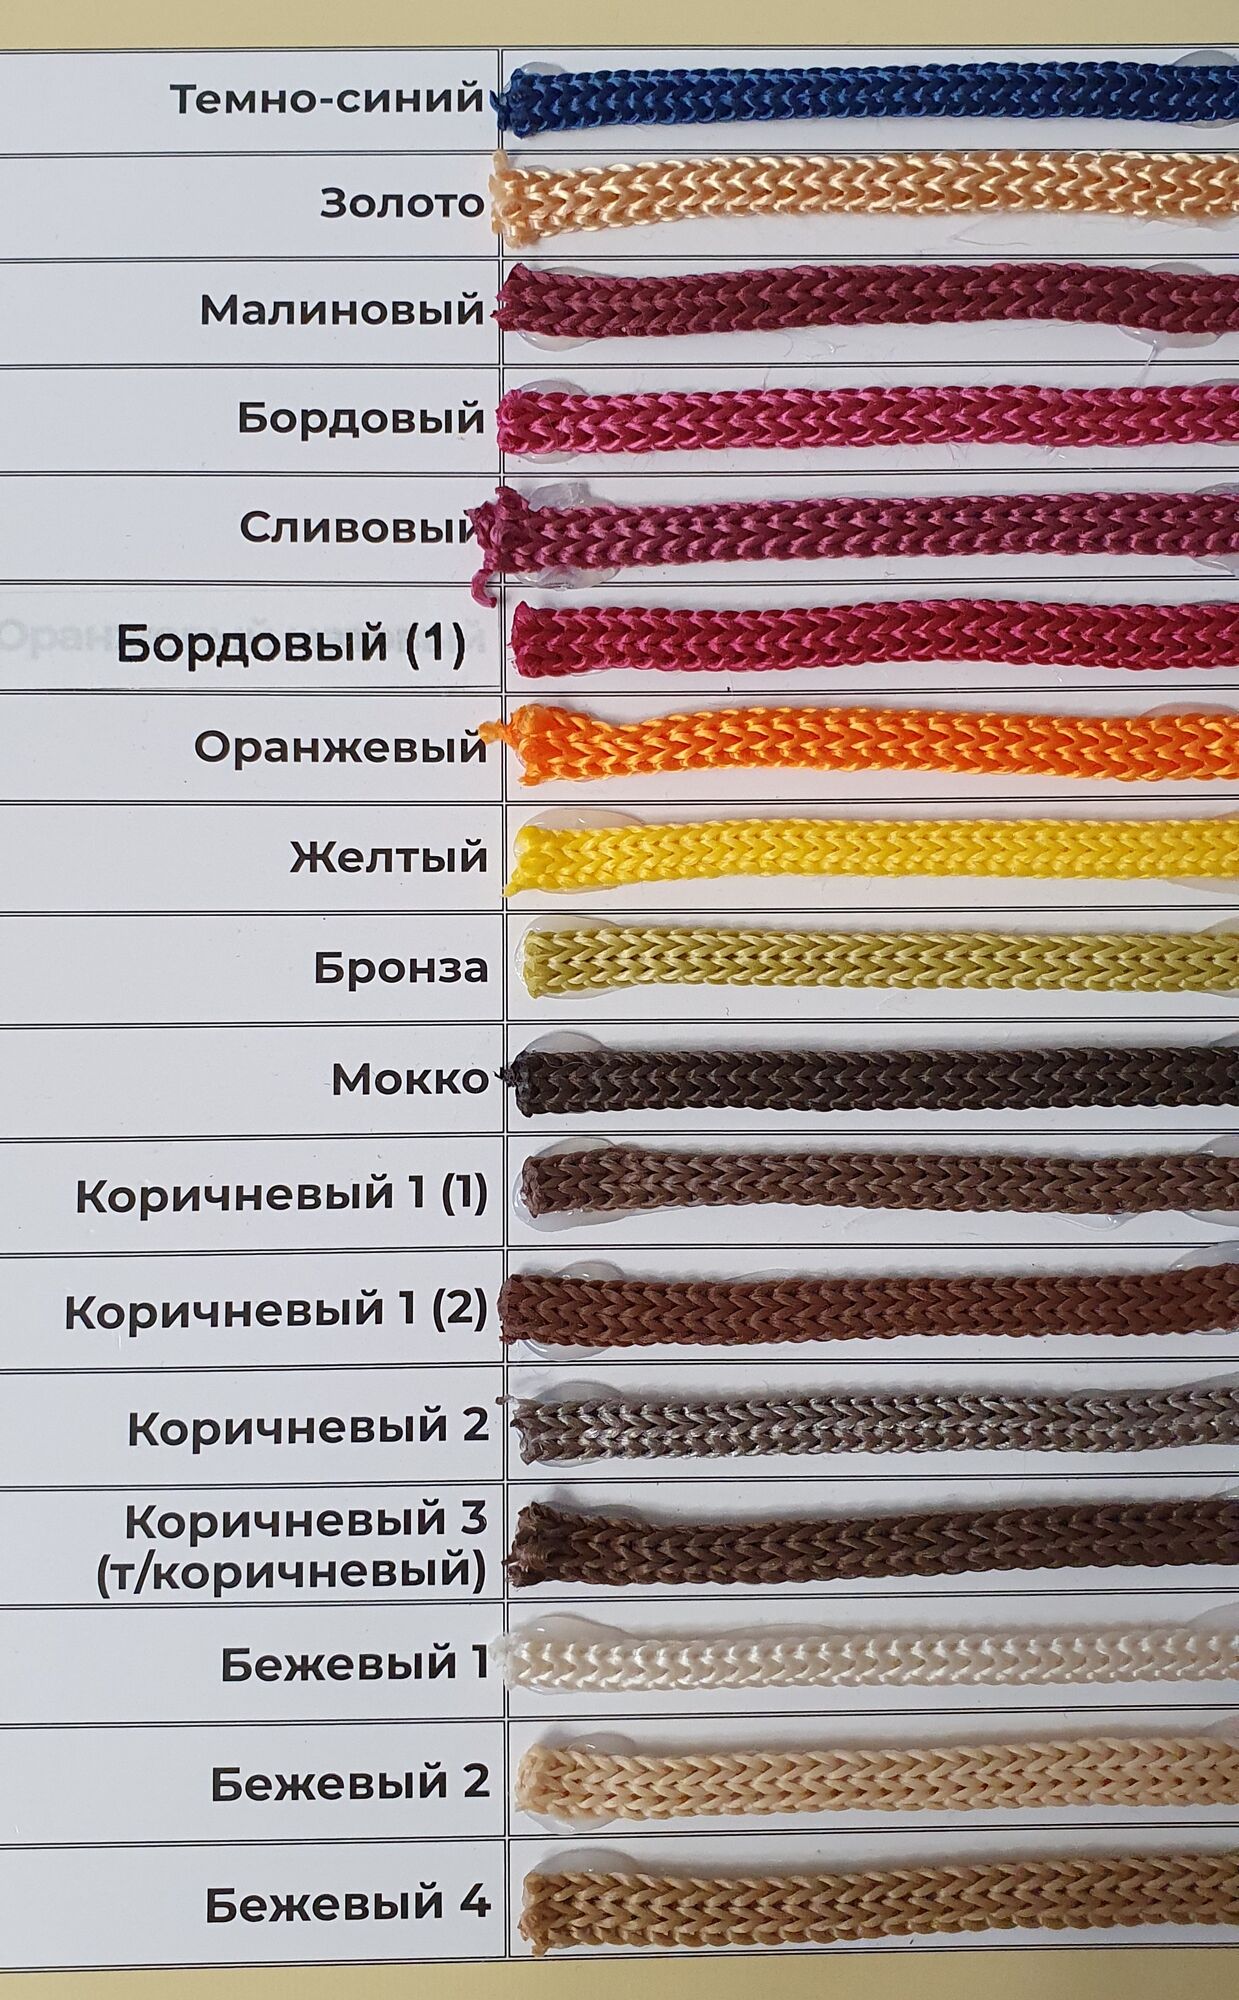 карта цветов полипропиленового шнура 4